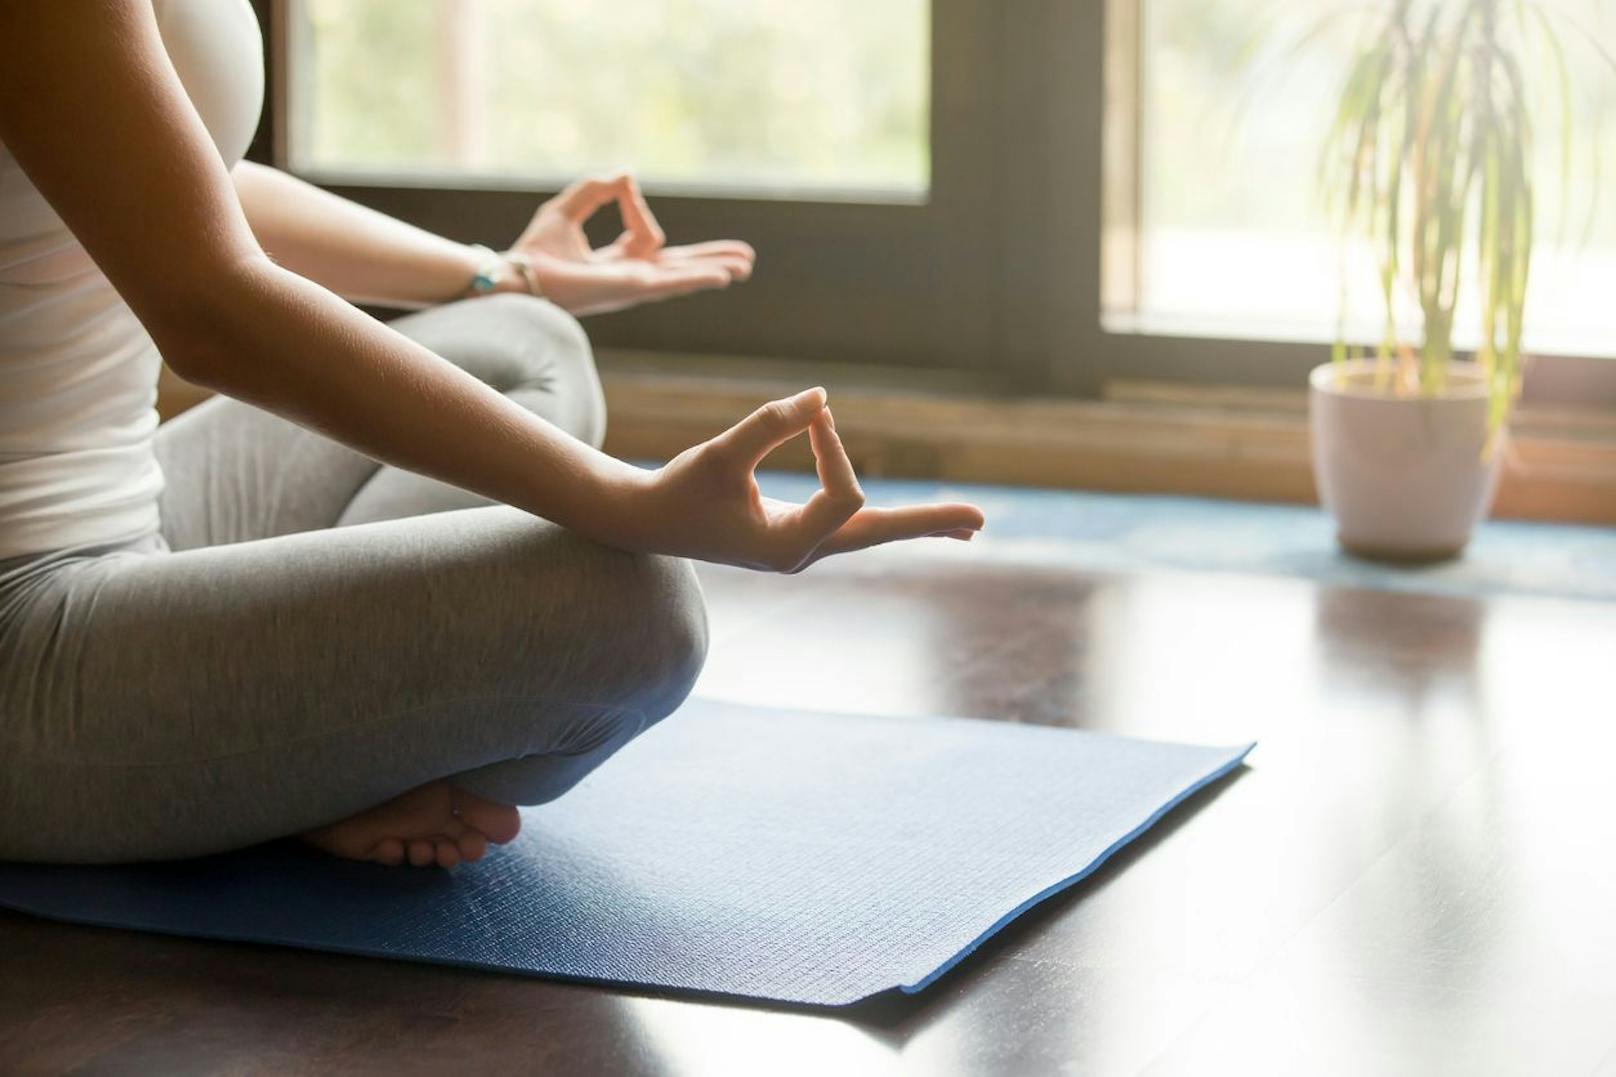 Finde einen Weg um dich zu entspannen bevor du dich schlafen legst. Lege dein Handy beiseite und versuche es lieber mit einigen Meditationstechniken, Yoga oder einfachen Muskelentspannungsübungen. 